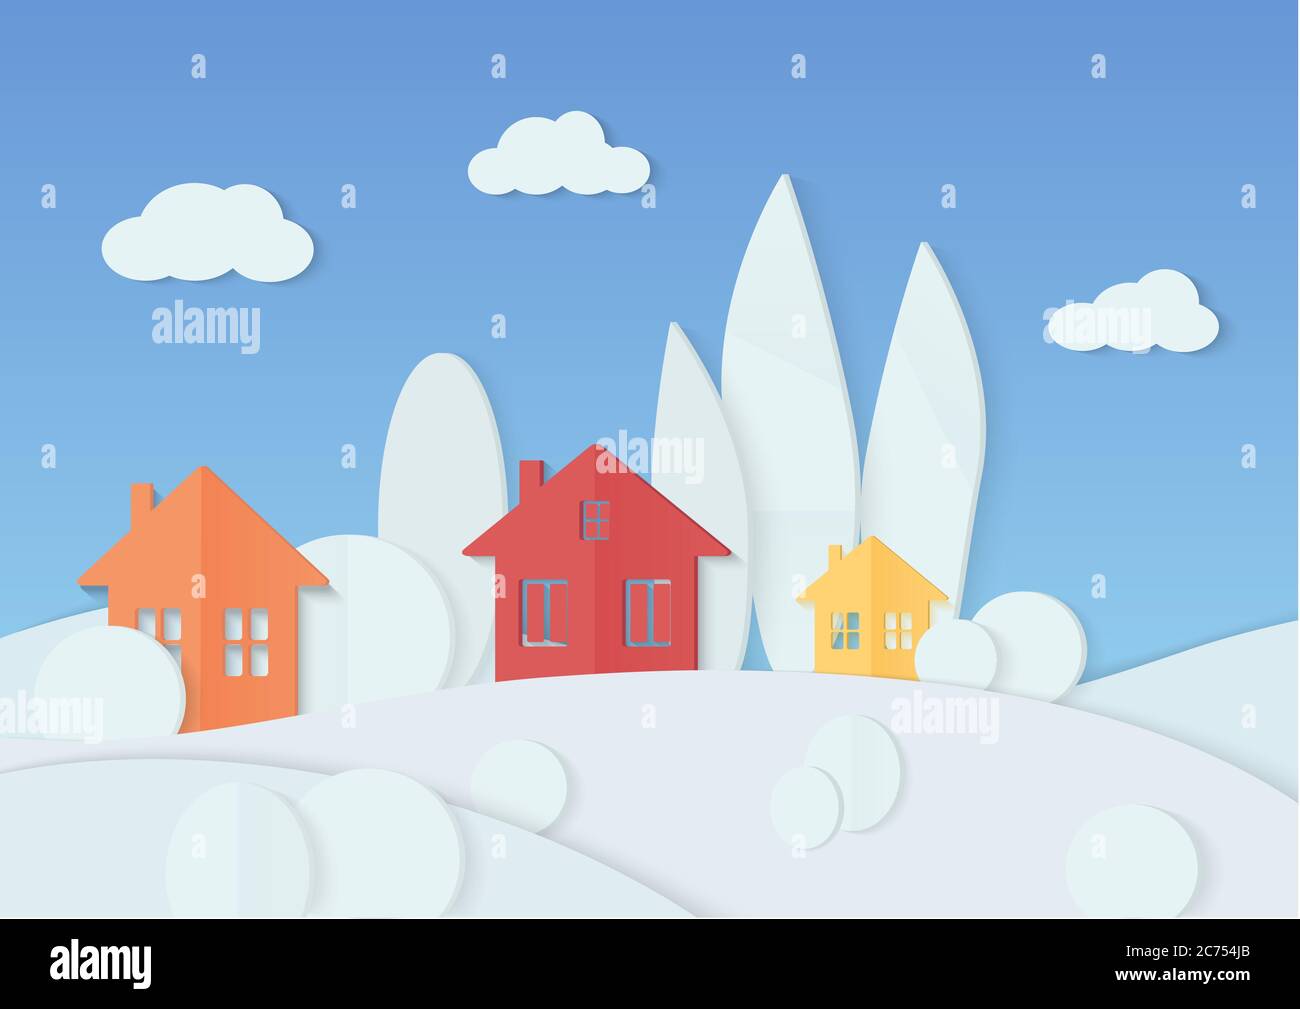 Vektor-Illustration von einfachen bunten Häusern in minimalen Bäumen mit Schnee bedeckt platziert. Winter weihnachten Dorf Karton Papier Landschaft. Haus, Berge und Wald Stock Vektor